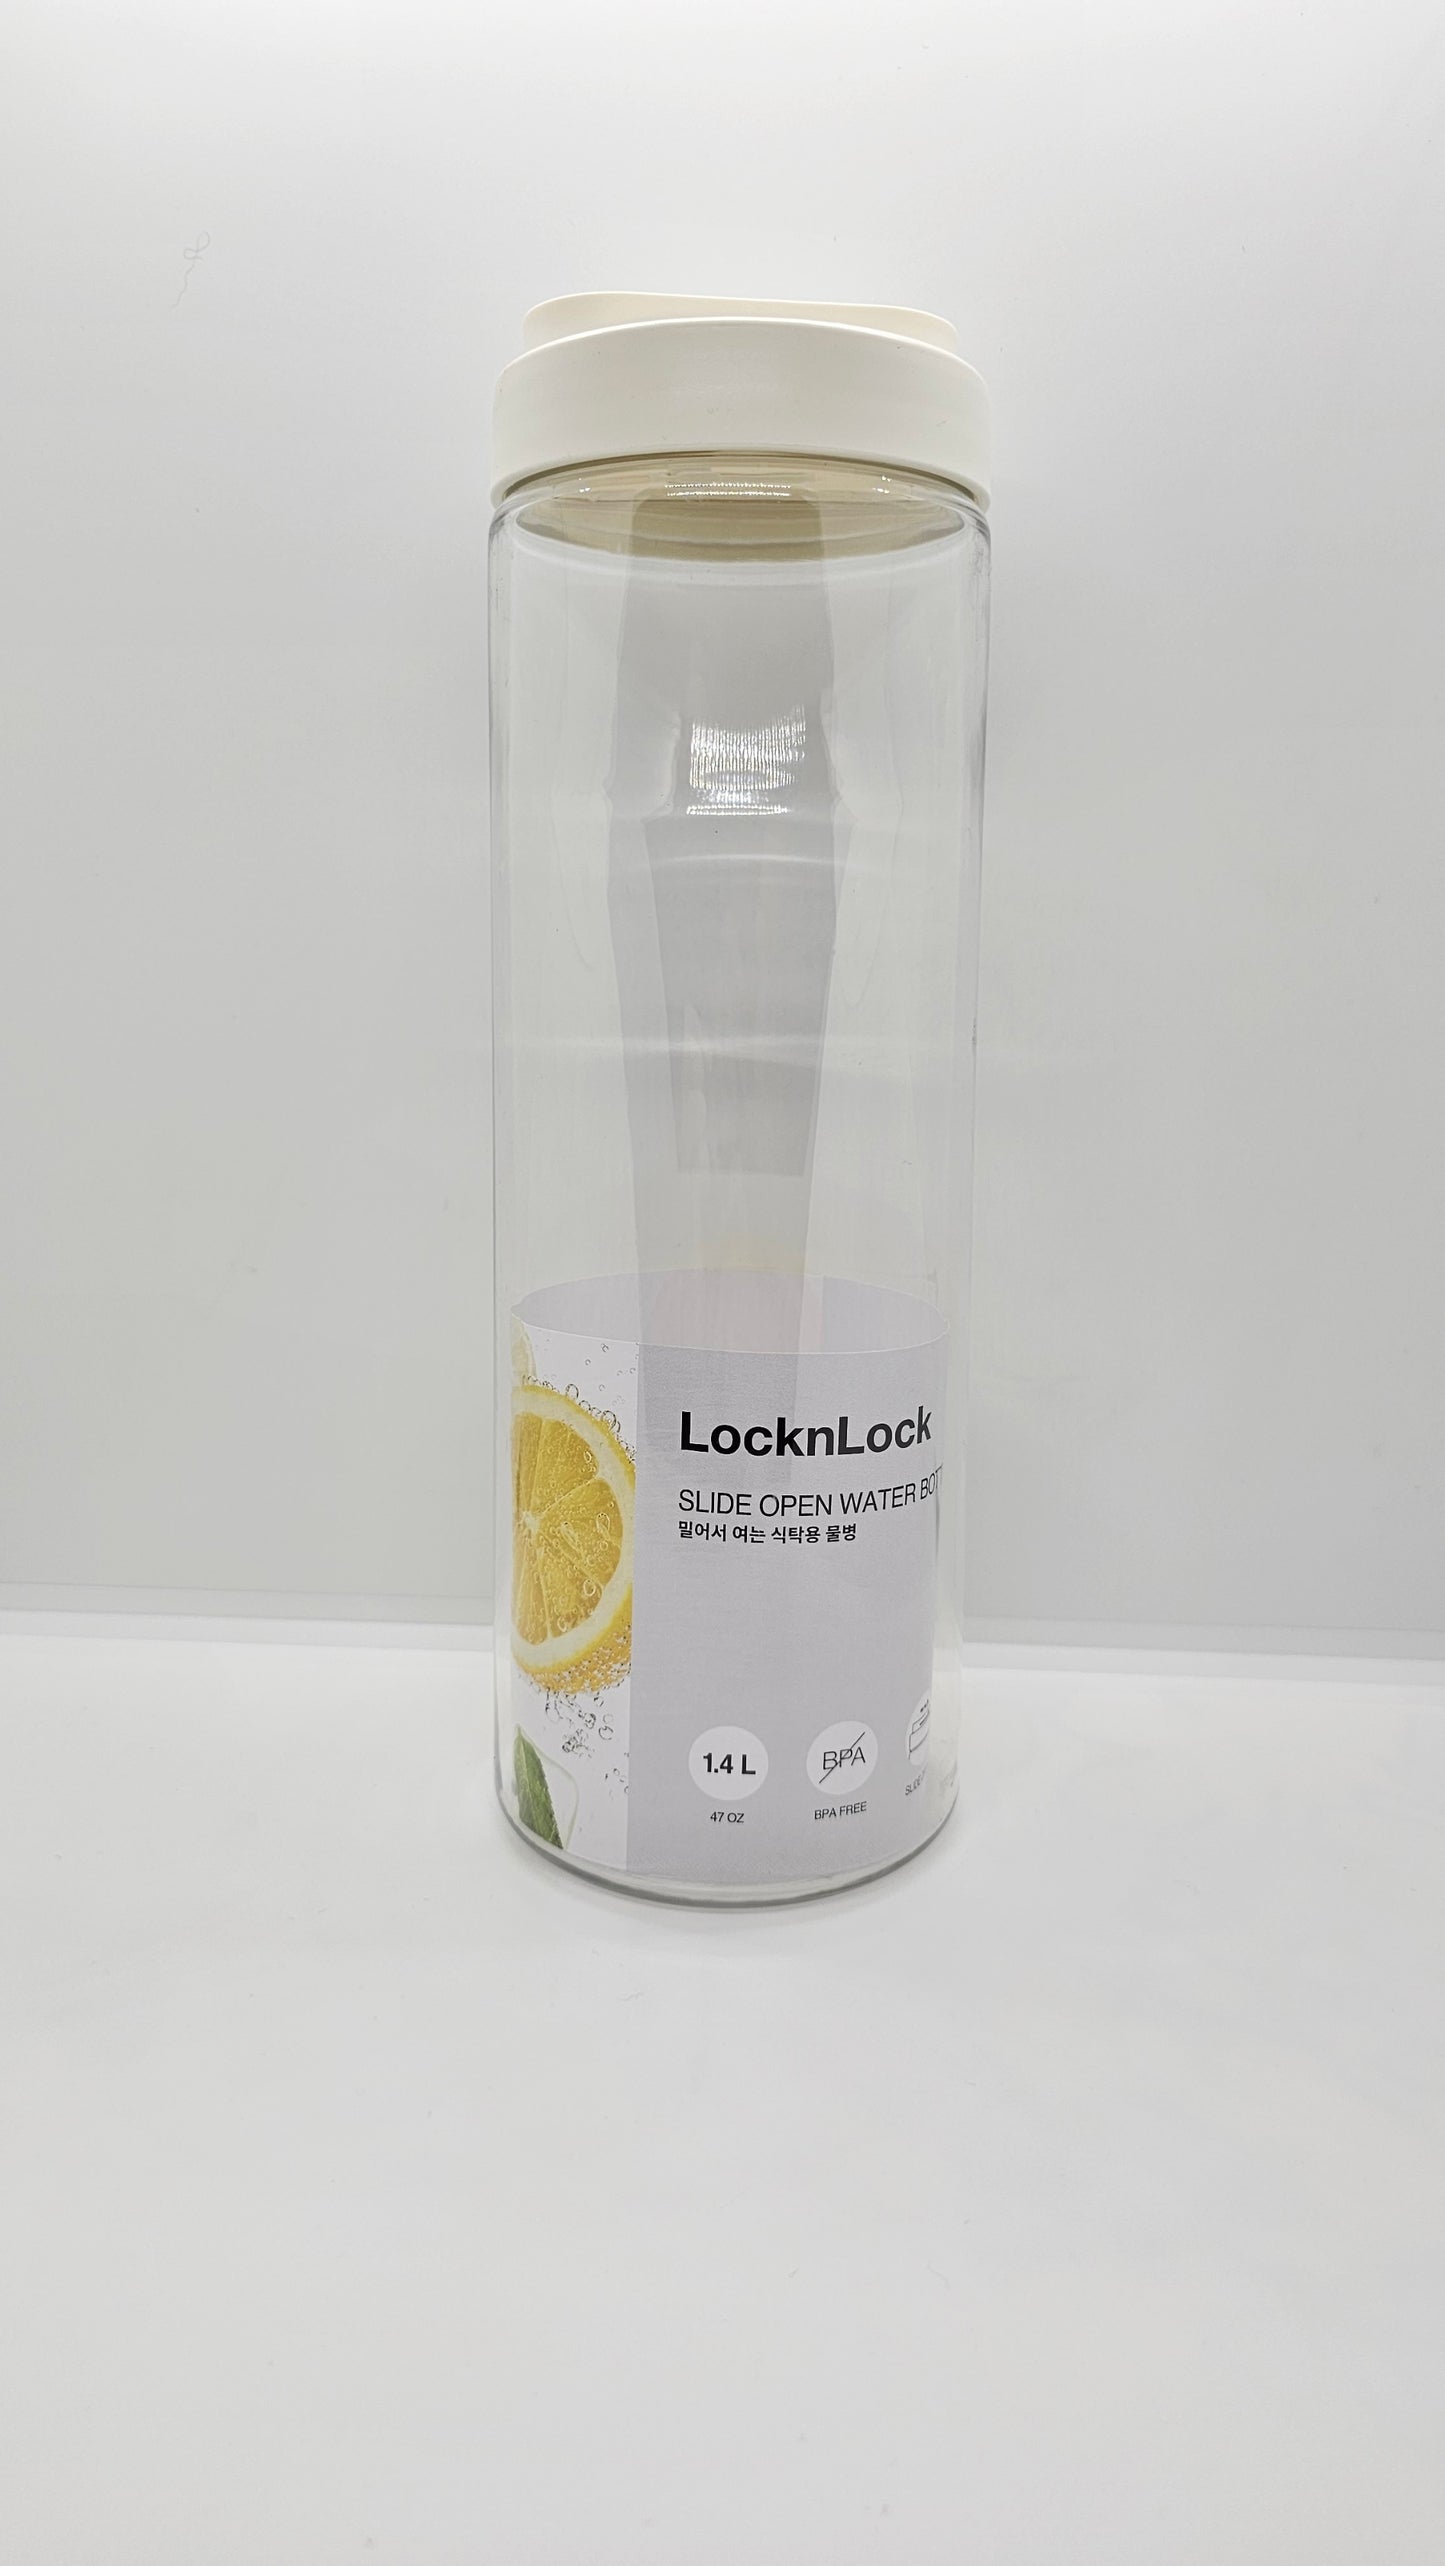 1.4L LocknLock New Sliding Lid PET BPA Free Water Bottle Drink